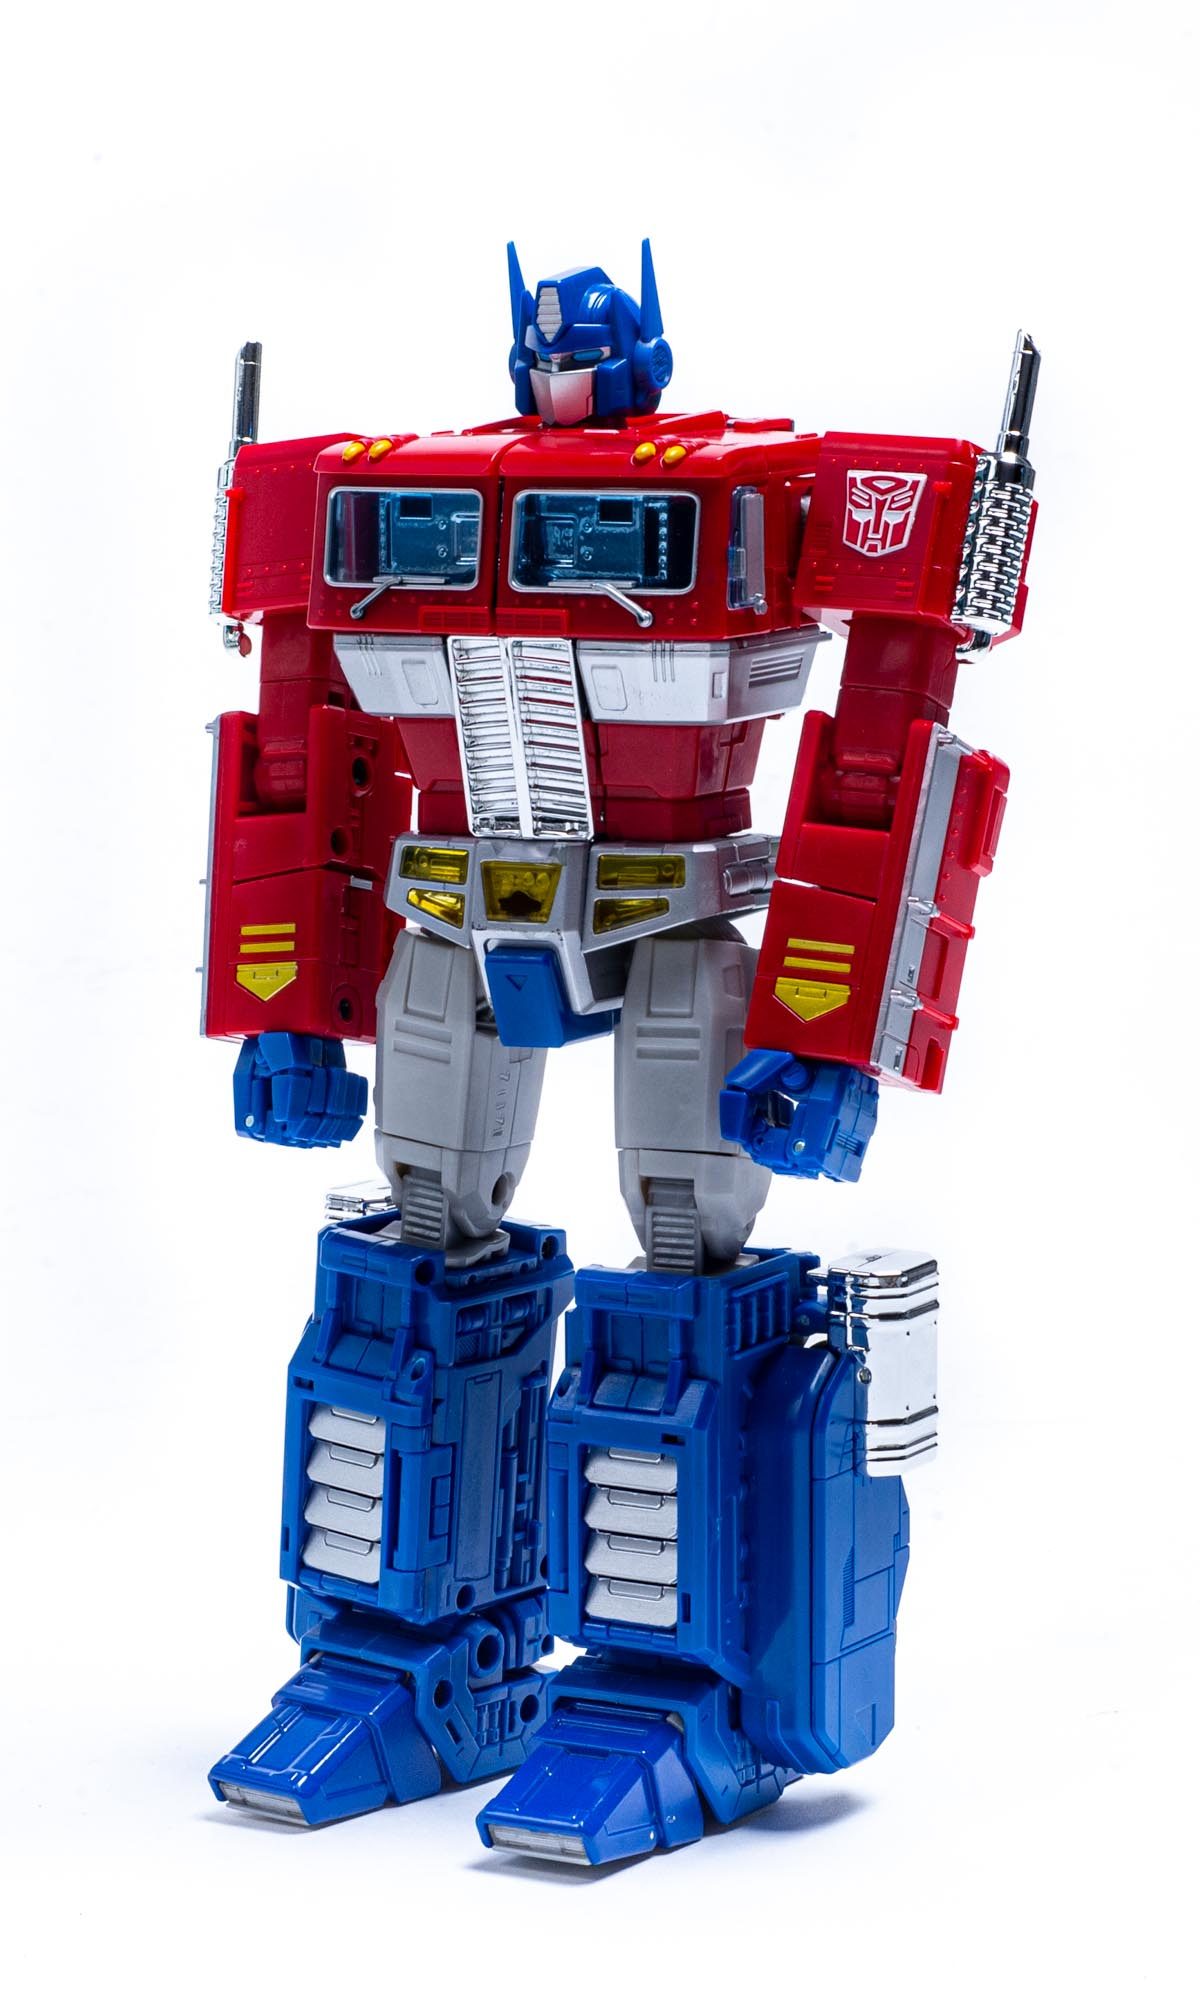 20190627-20190627-Transformers Optimus Prime-7383